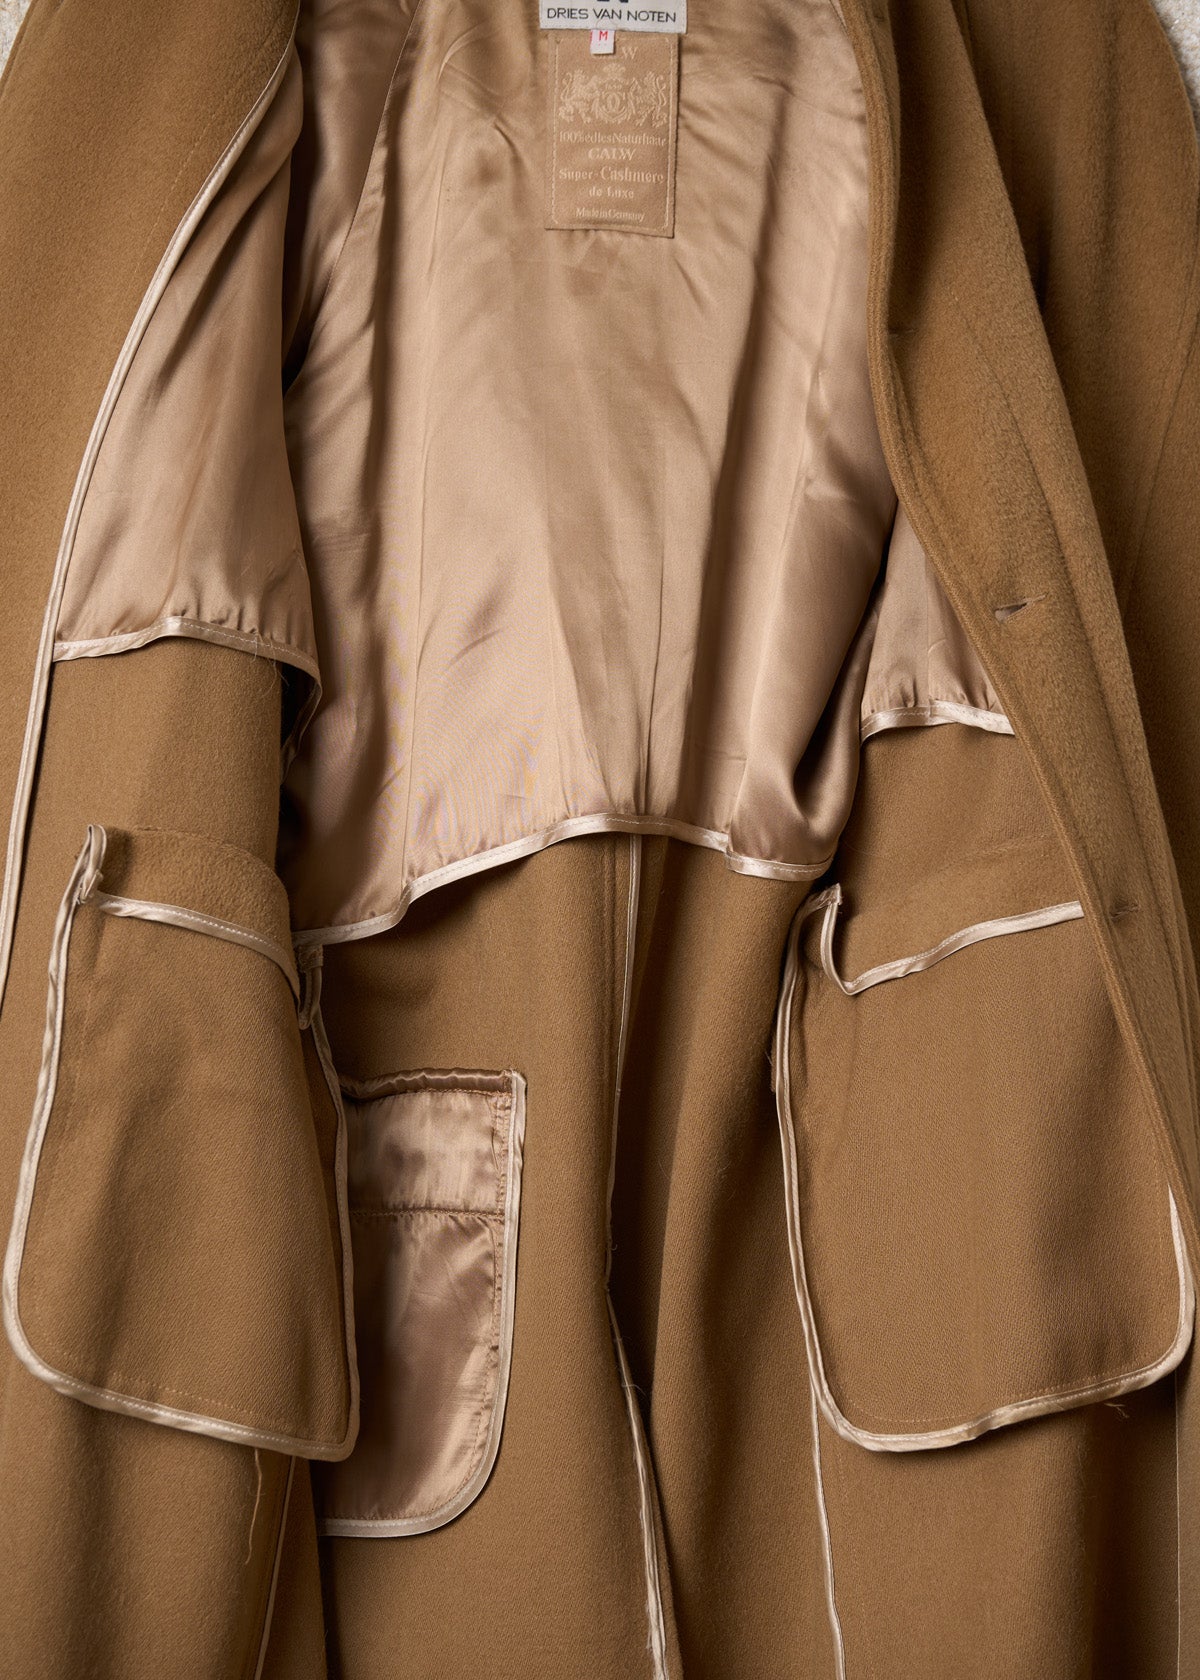 Camel Cashmere Long Balmacaan Coat 1990's - Medium